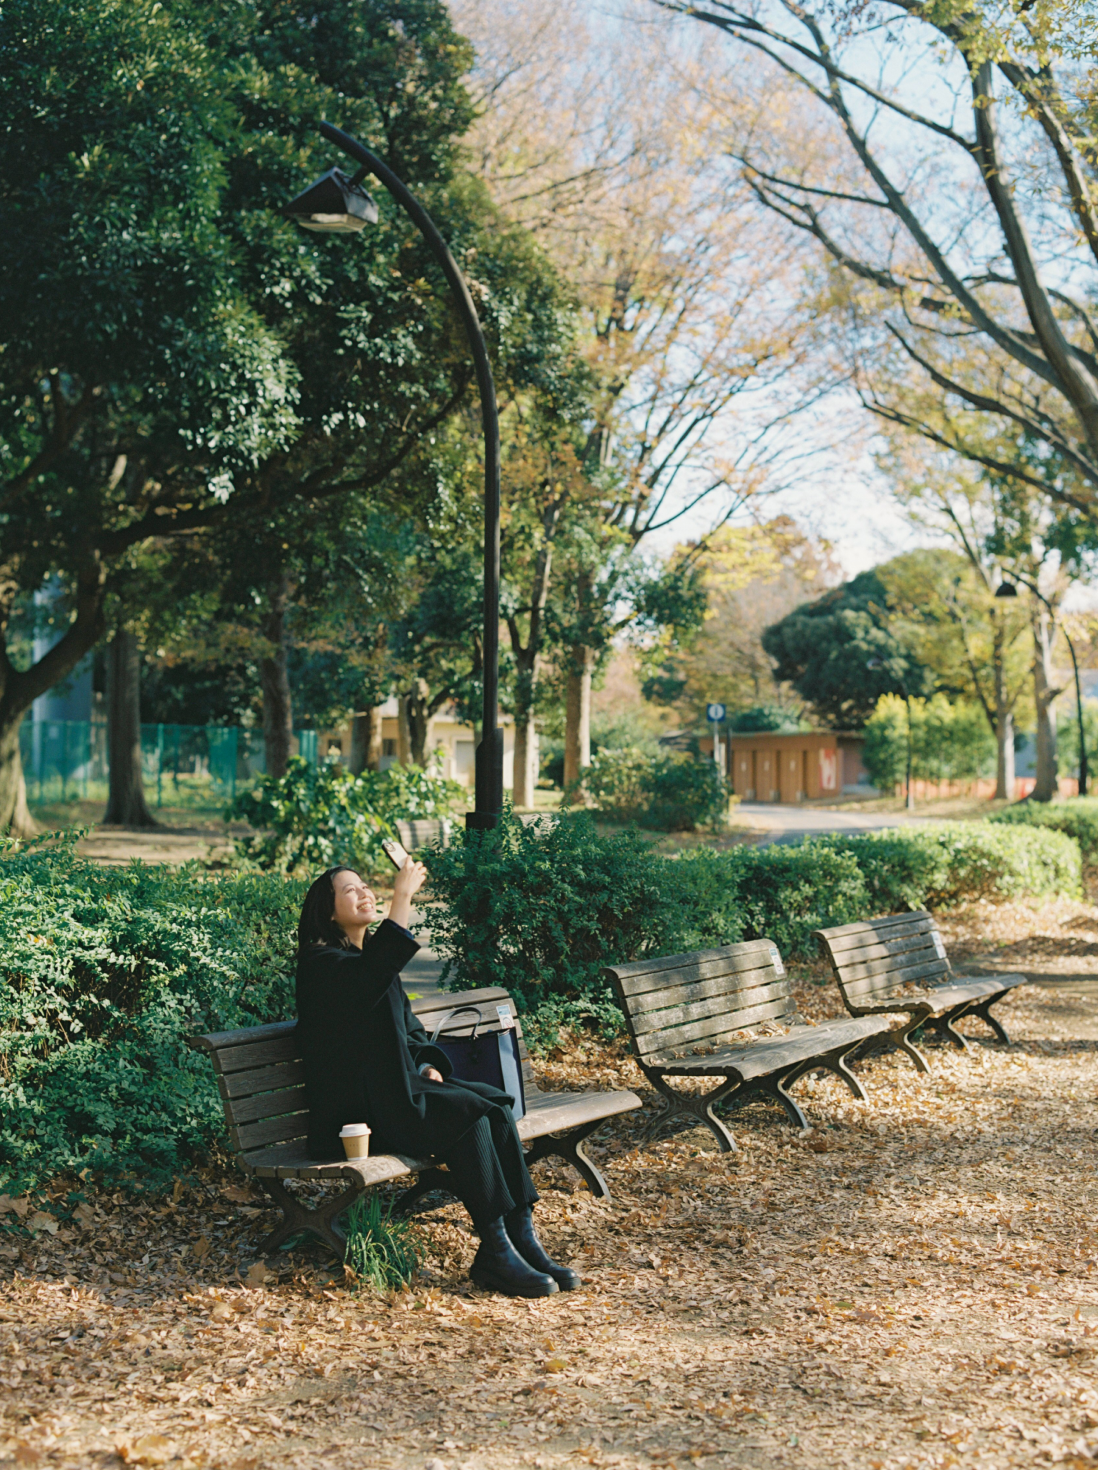 公園のベンチでスマートフォンを利用して風景を撮影している女性。